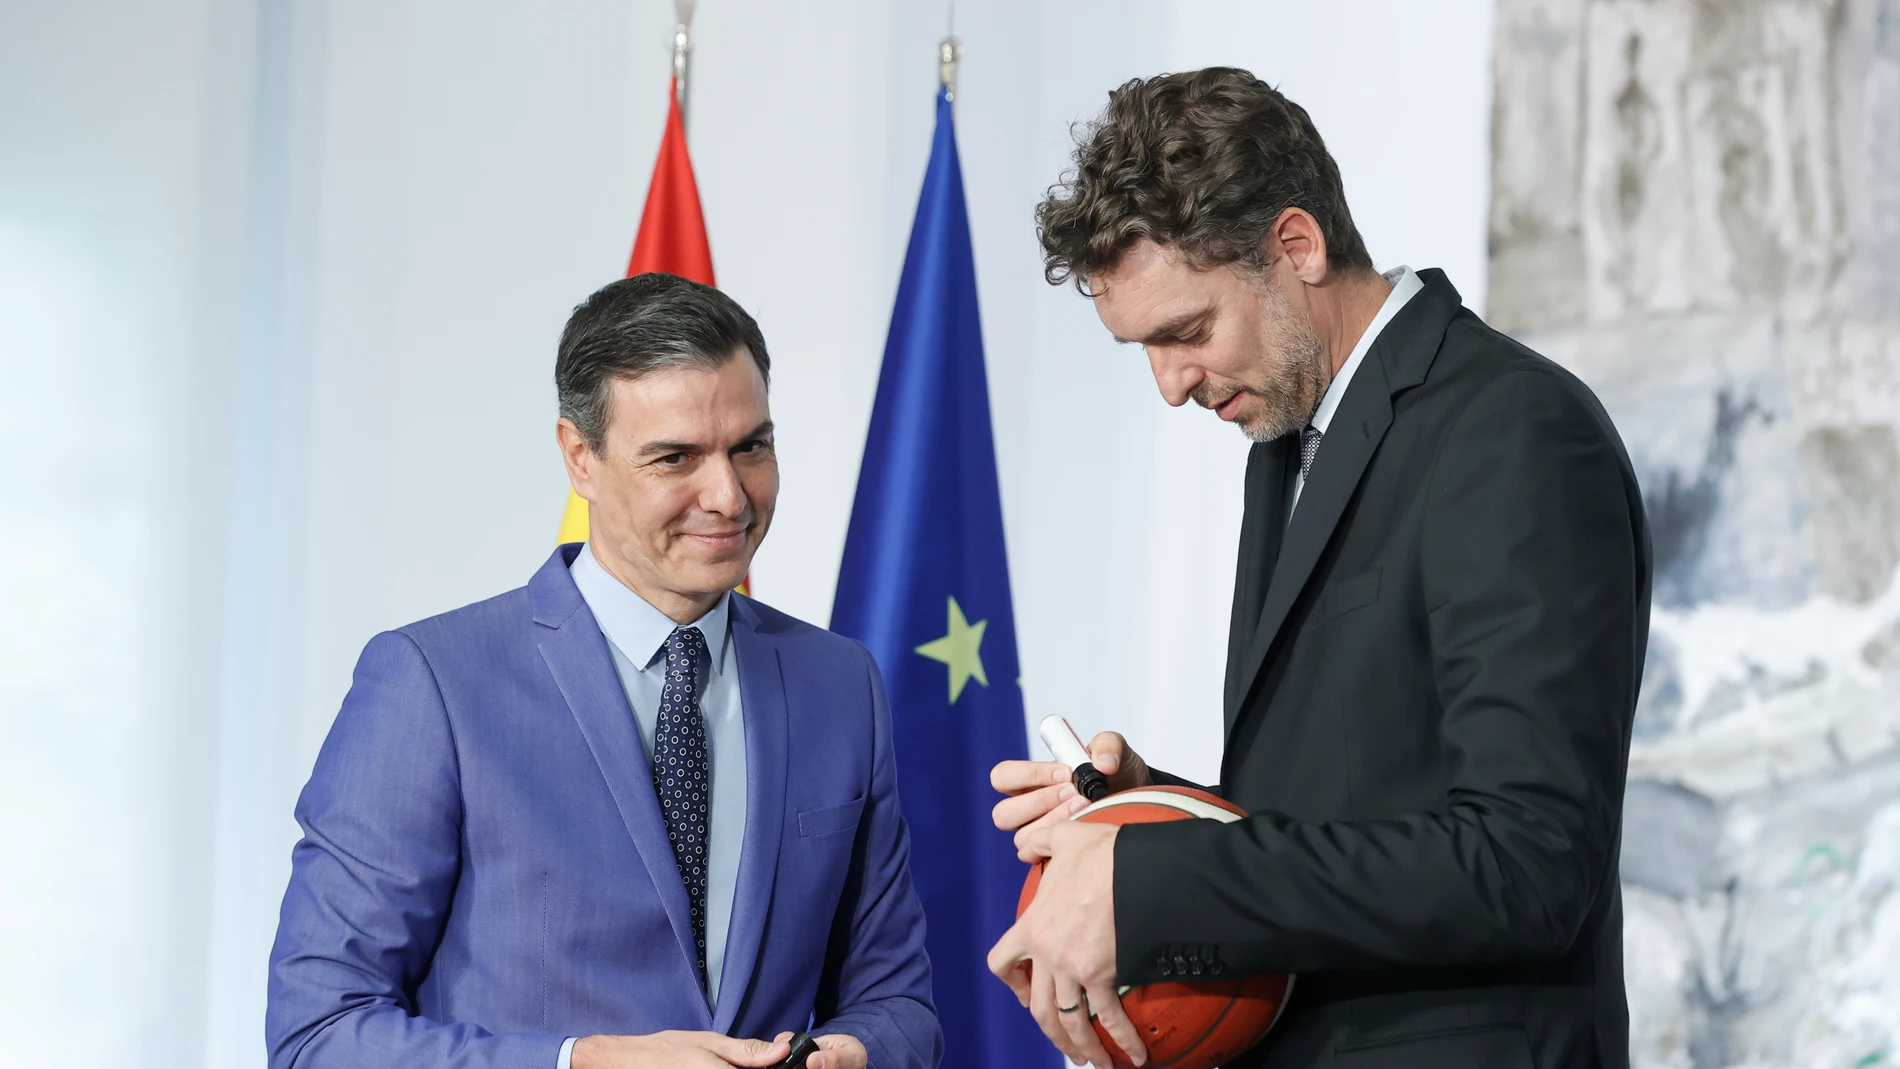 El exjugador de baloncesto Pau Gasol firma este jueves un balón al presidente del Gobierno, Pedro Sánchez